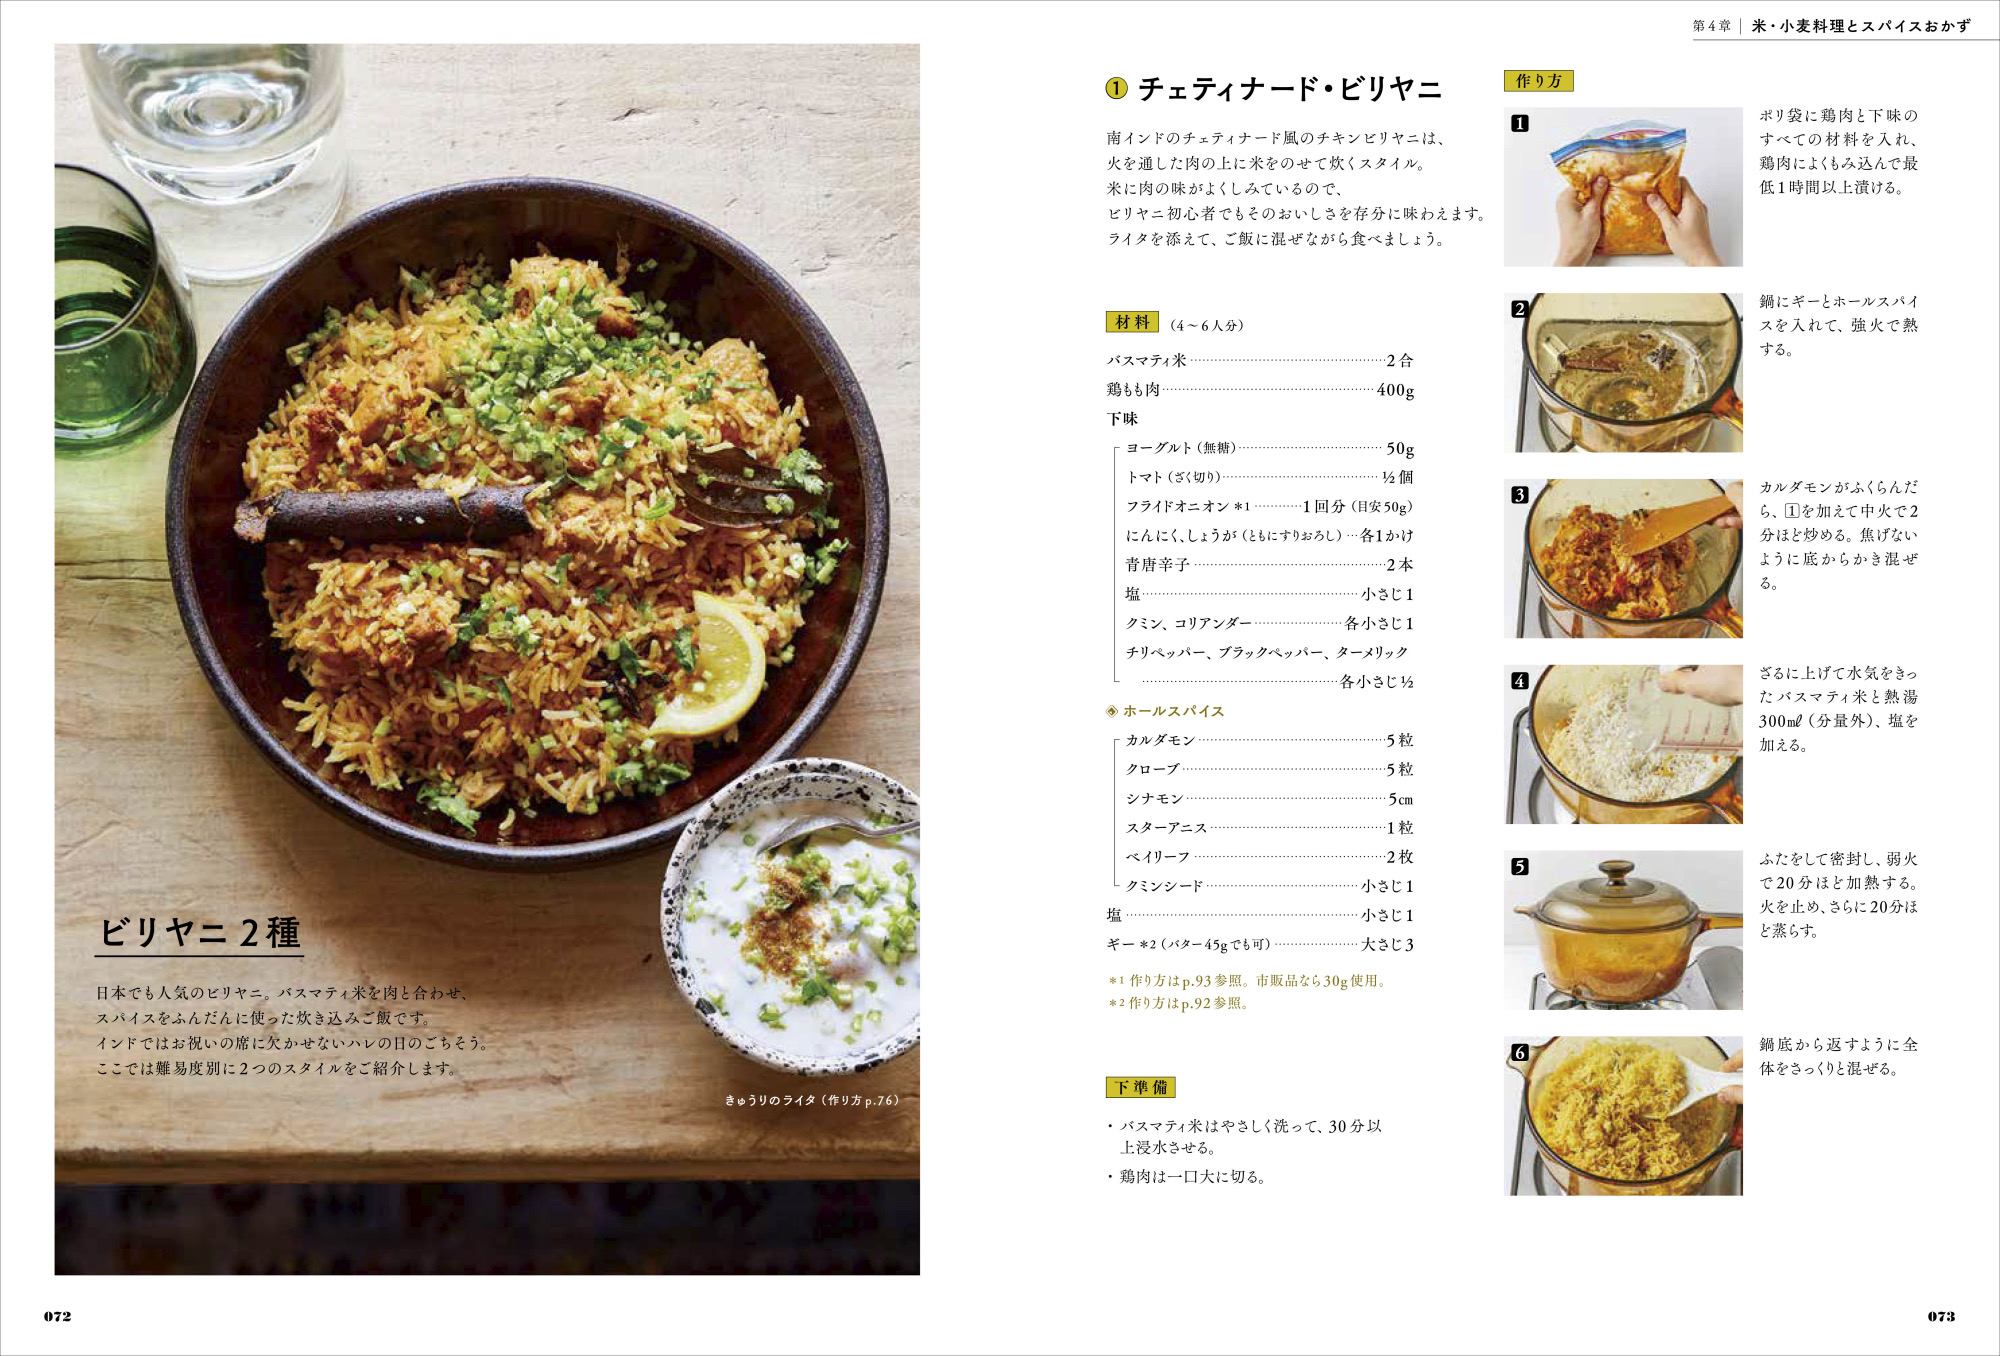 画像は、チェティナード・ビリヤニ（インドの炊き込みご飯）のページ。『印度カリー子のスパイスカレー教室』（誠文堂新光社）より